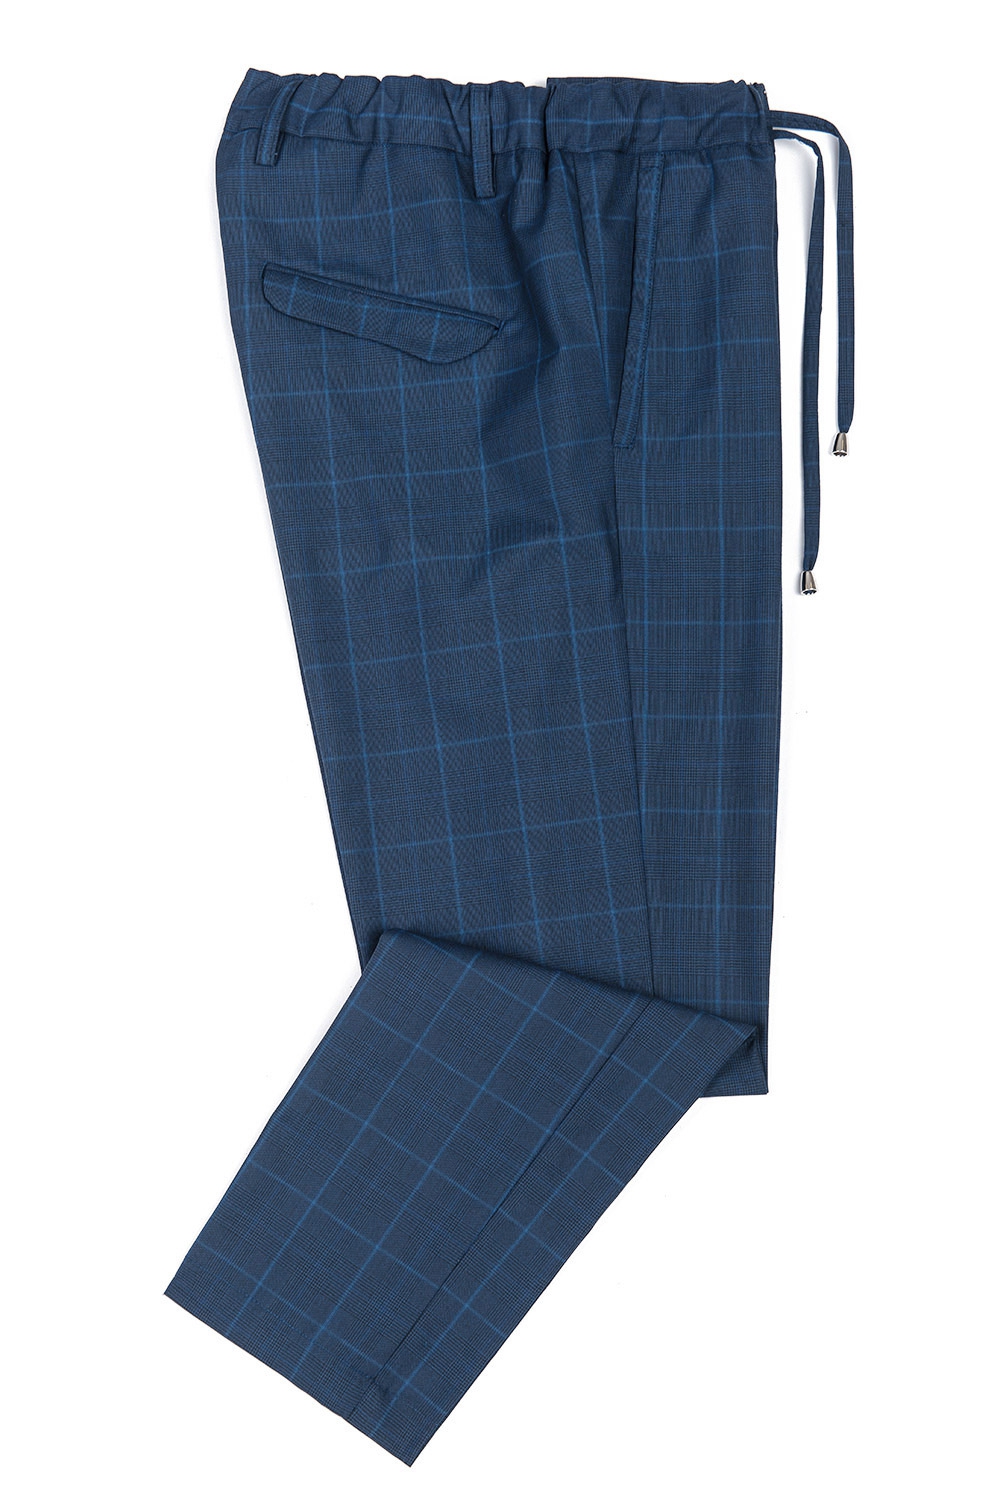 Pantaloni slim bleumarin uni 0